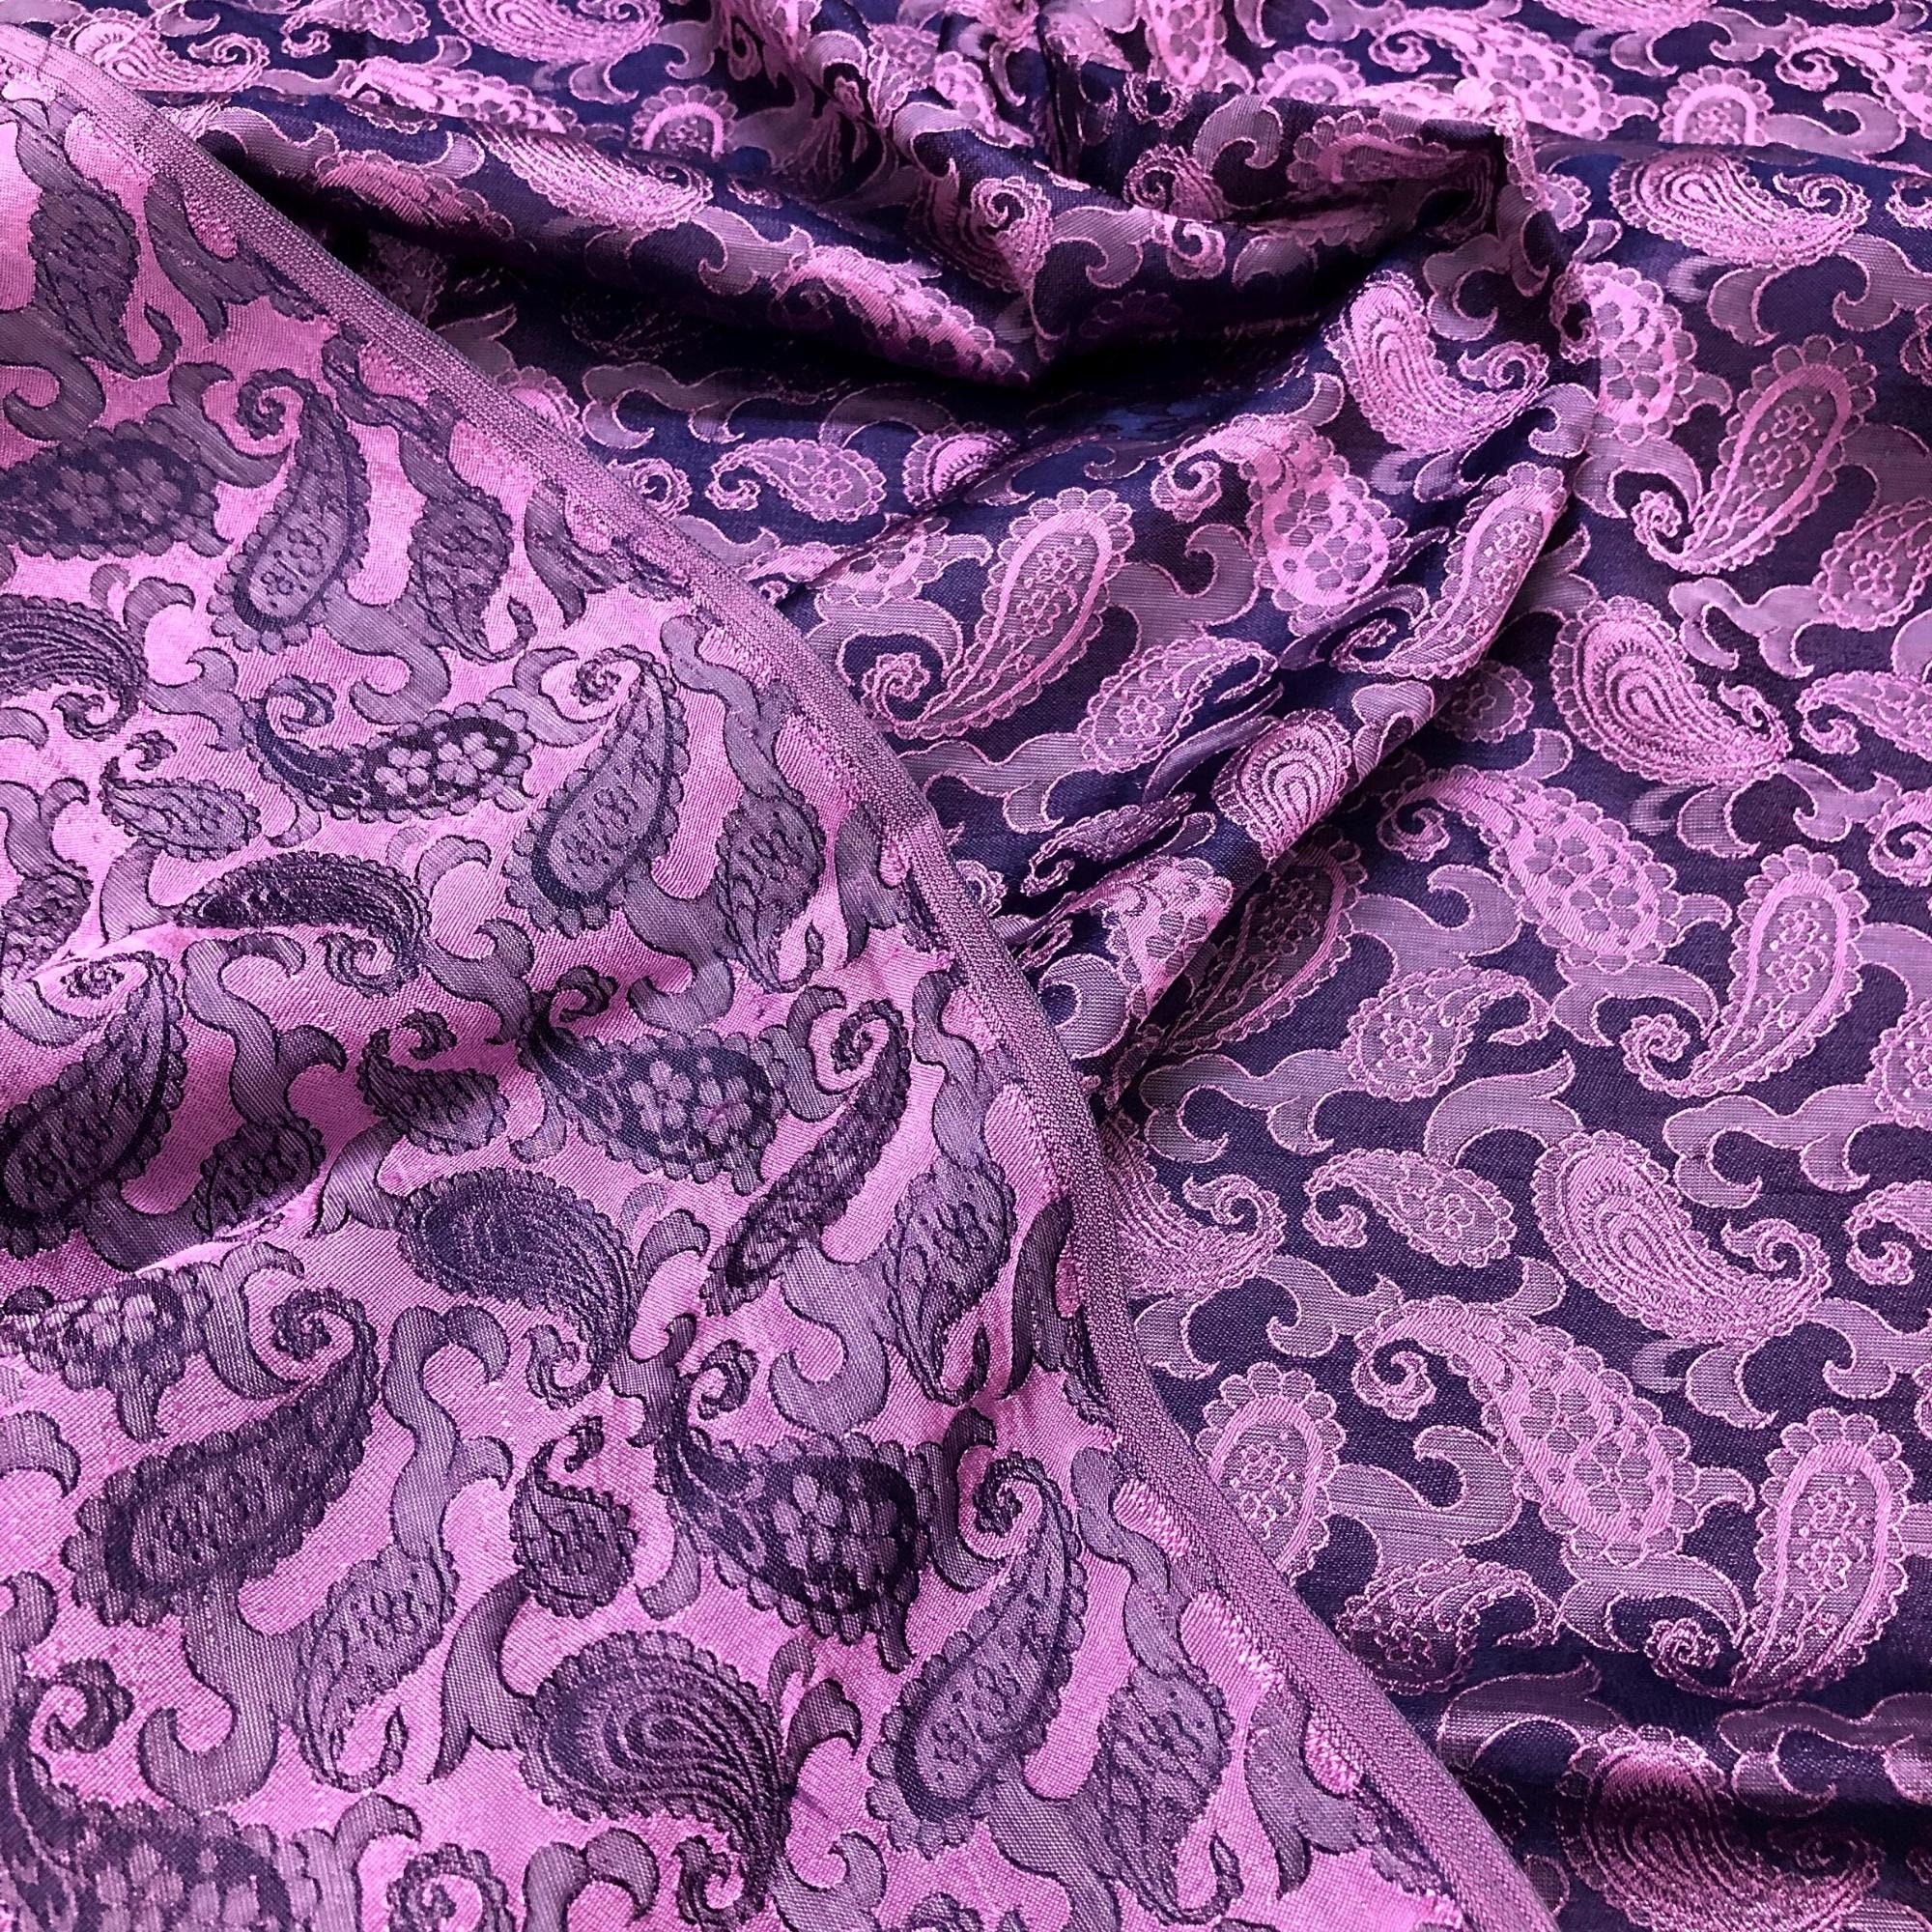 Vải Lụa Tơ Tằm Palacesilk đuôi công màu tím may áo dài và các loại váy áo, khổ rộng 90, dệt thủ công, bền đẹp & thoáng mát